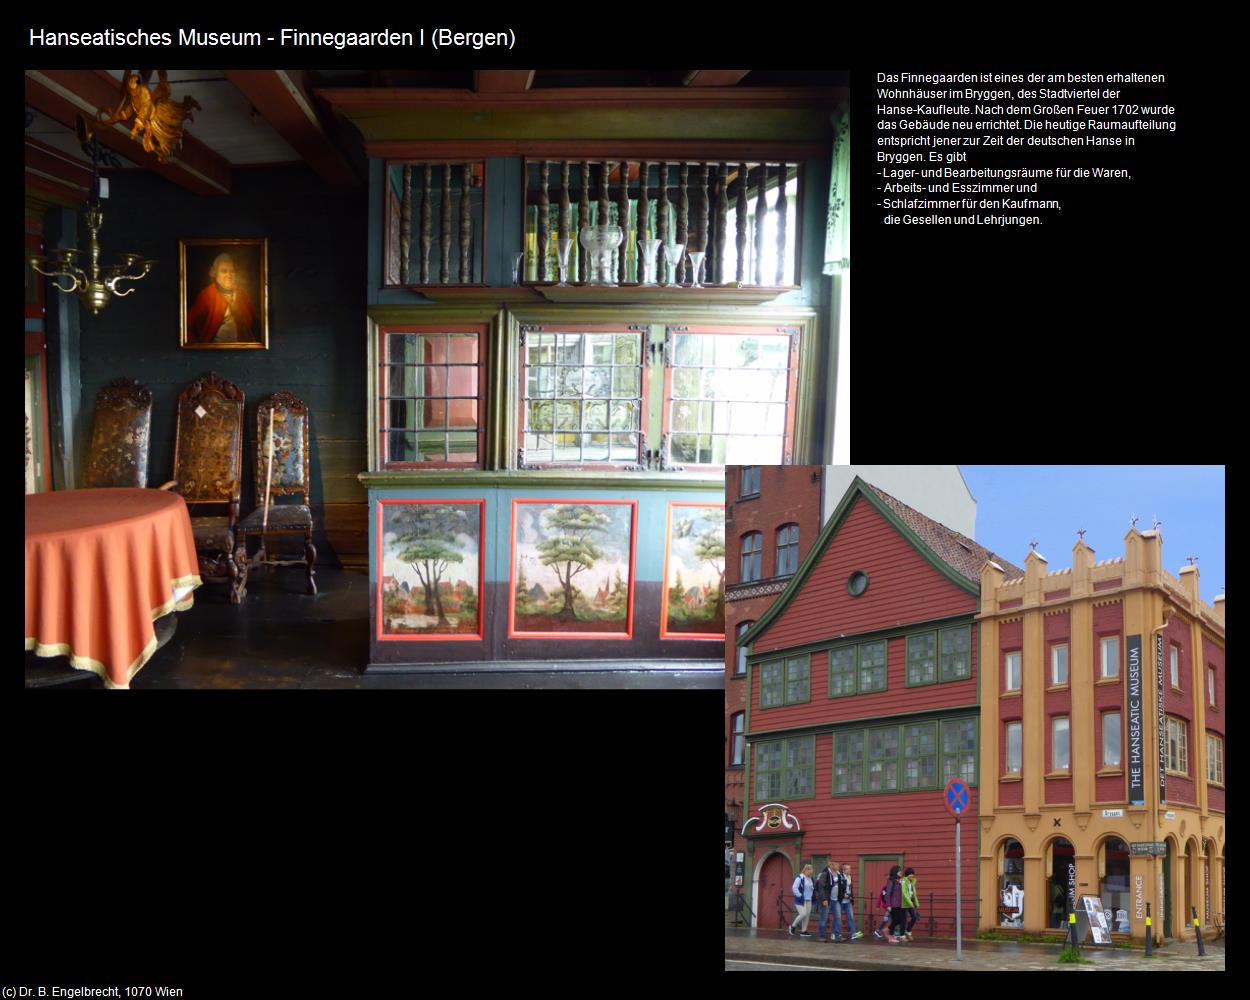 Hanseatisches Museum - Finnegaarden I (Bergen) in Kulturatlas-REISE nach NORWEGEN